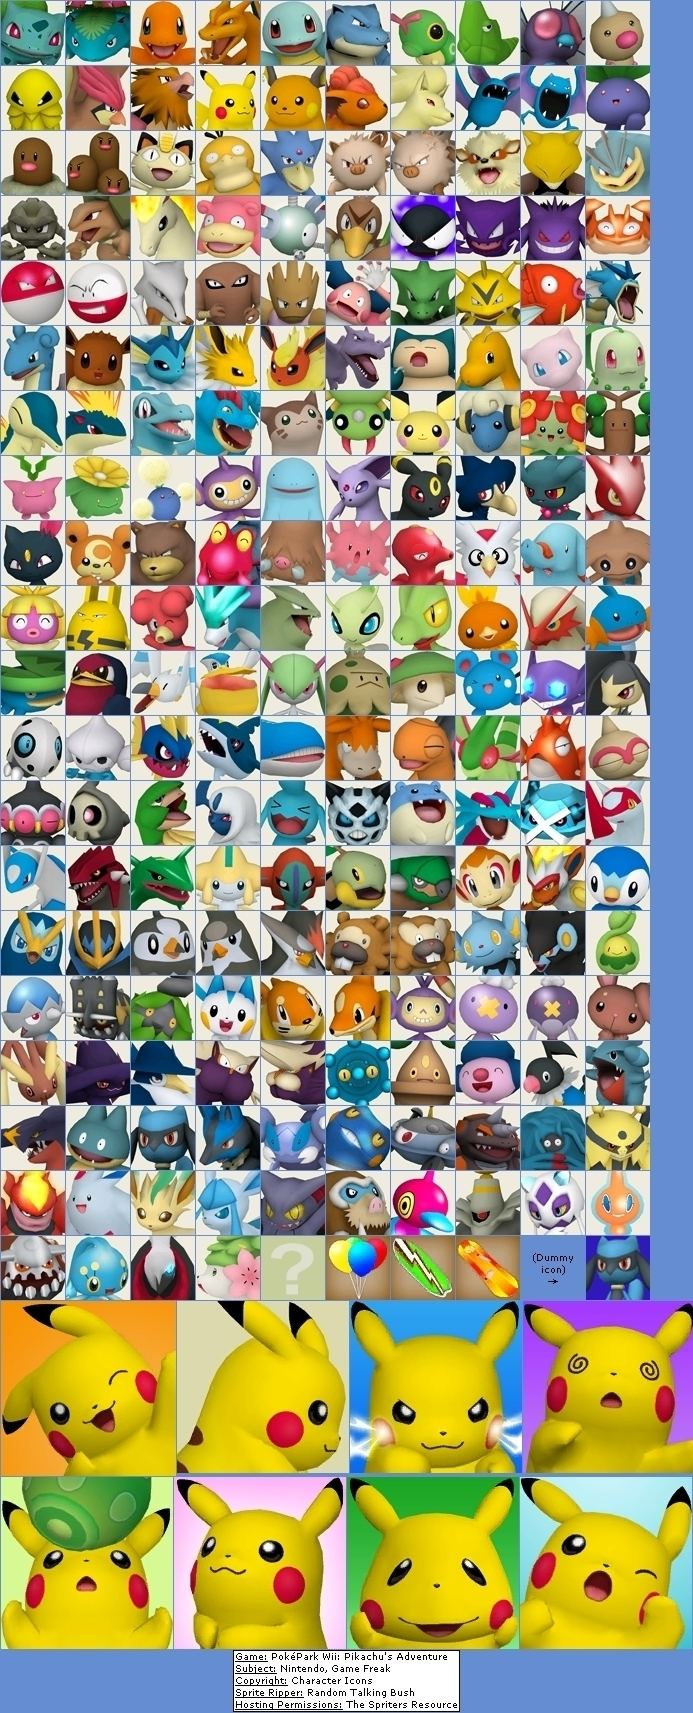 PokéPark Wii: Pikachu's Adventure Poke39Park Wii Pikachu39s Adventure images Character Icons HD